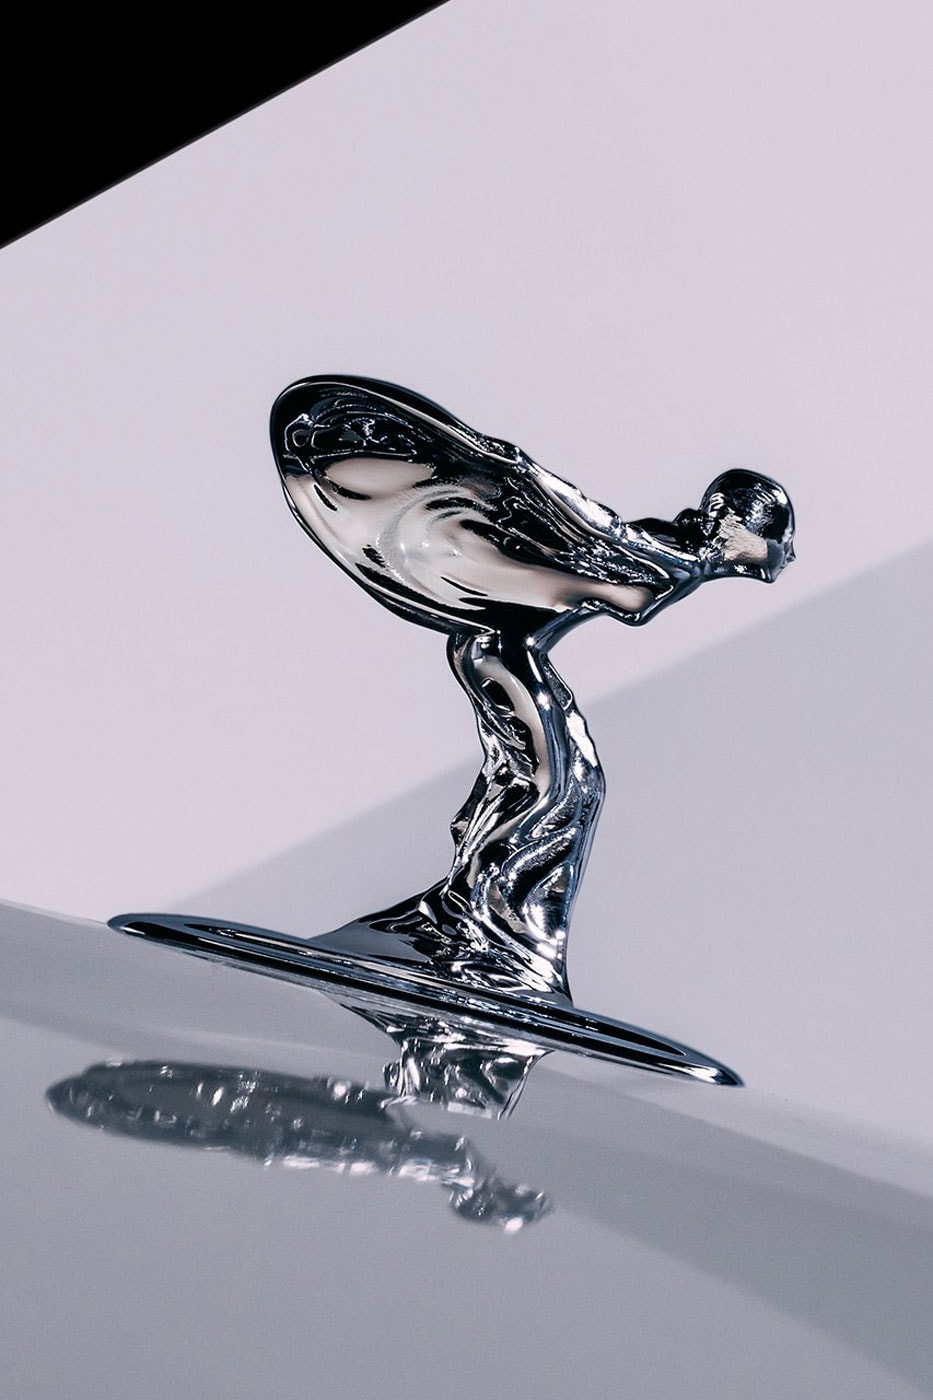 ロールス・ロイスが公式マスコットのデザインを刷新 Rolls Royce Spirit of Ecstacy figure update streamline aerodynamic spectre EV 